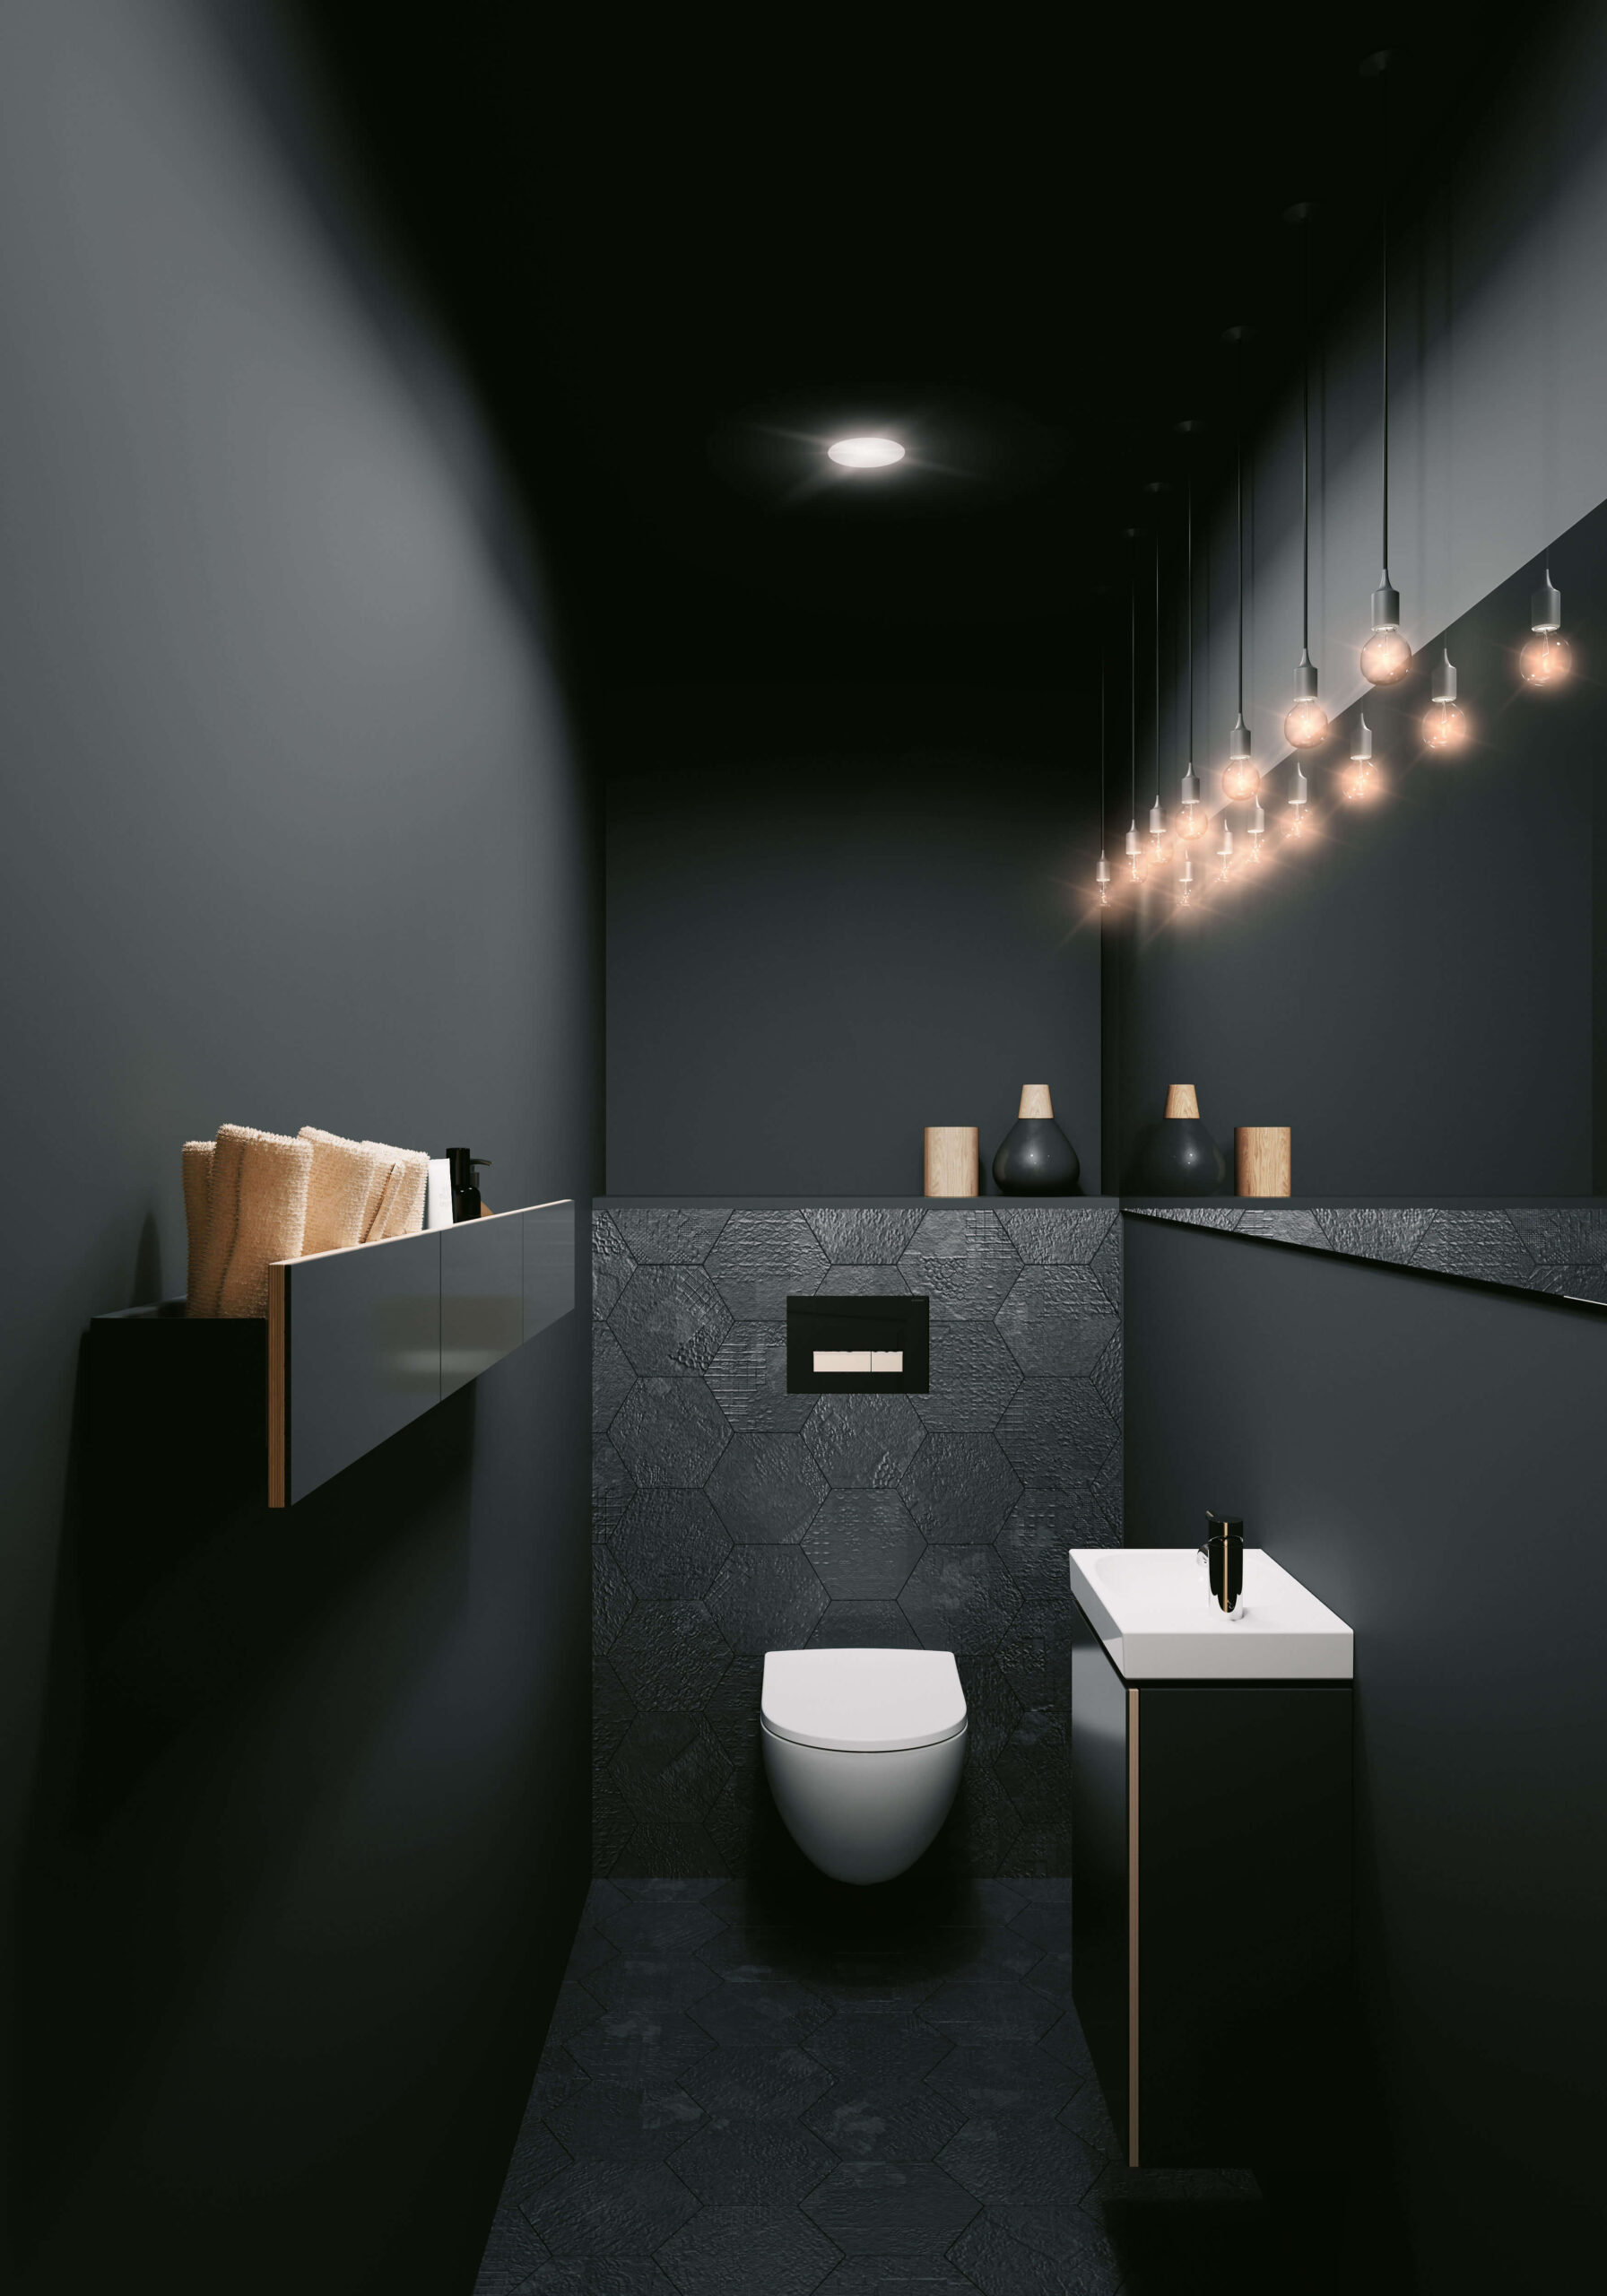 Bố trí thêm đèn vào không gian phòng tắm tông màu tối